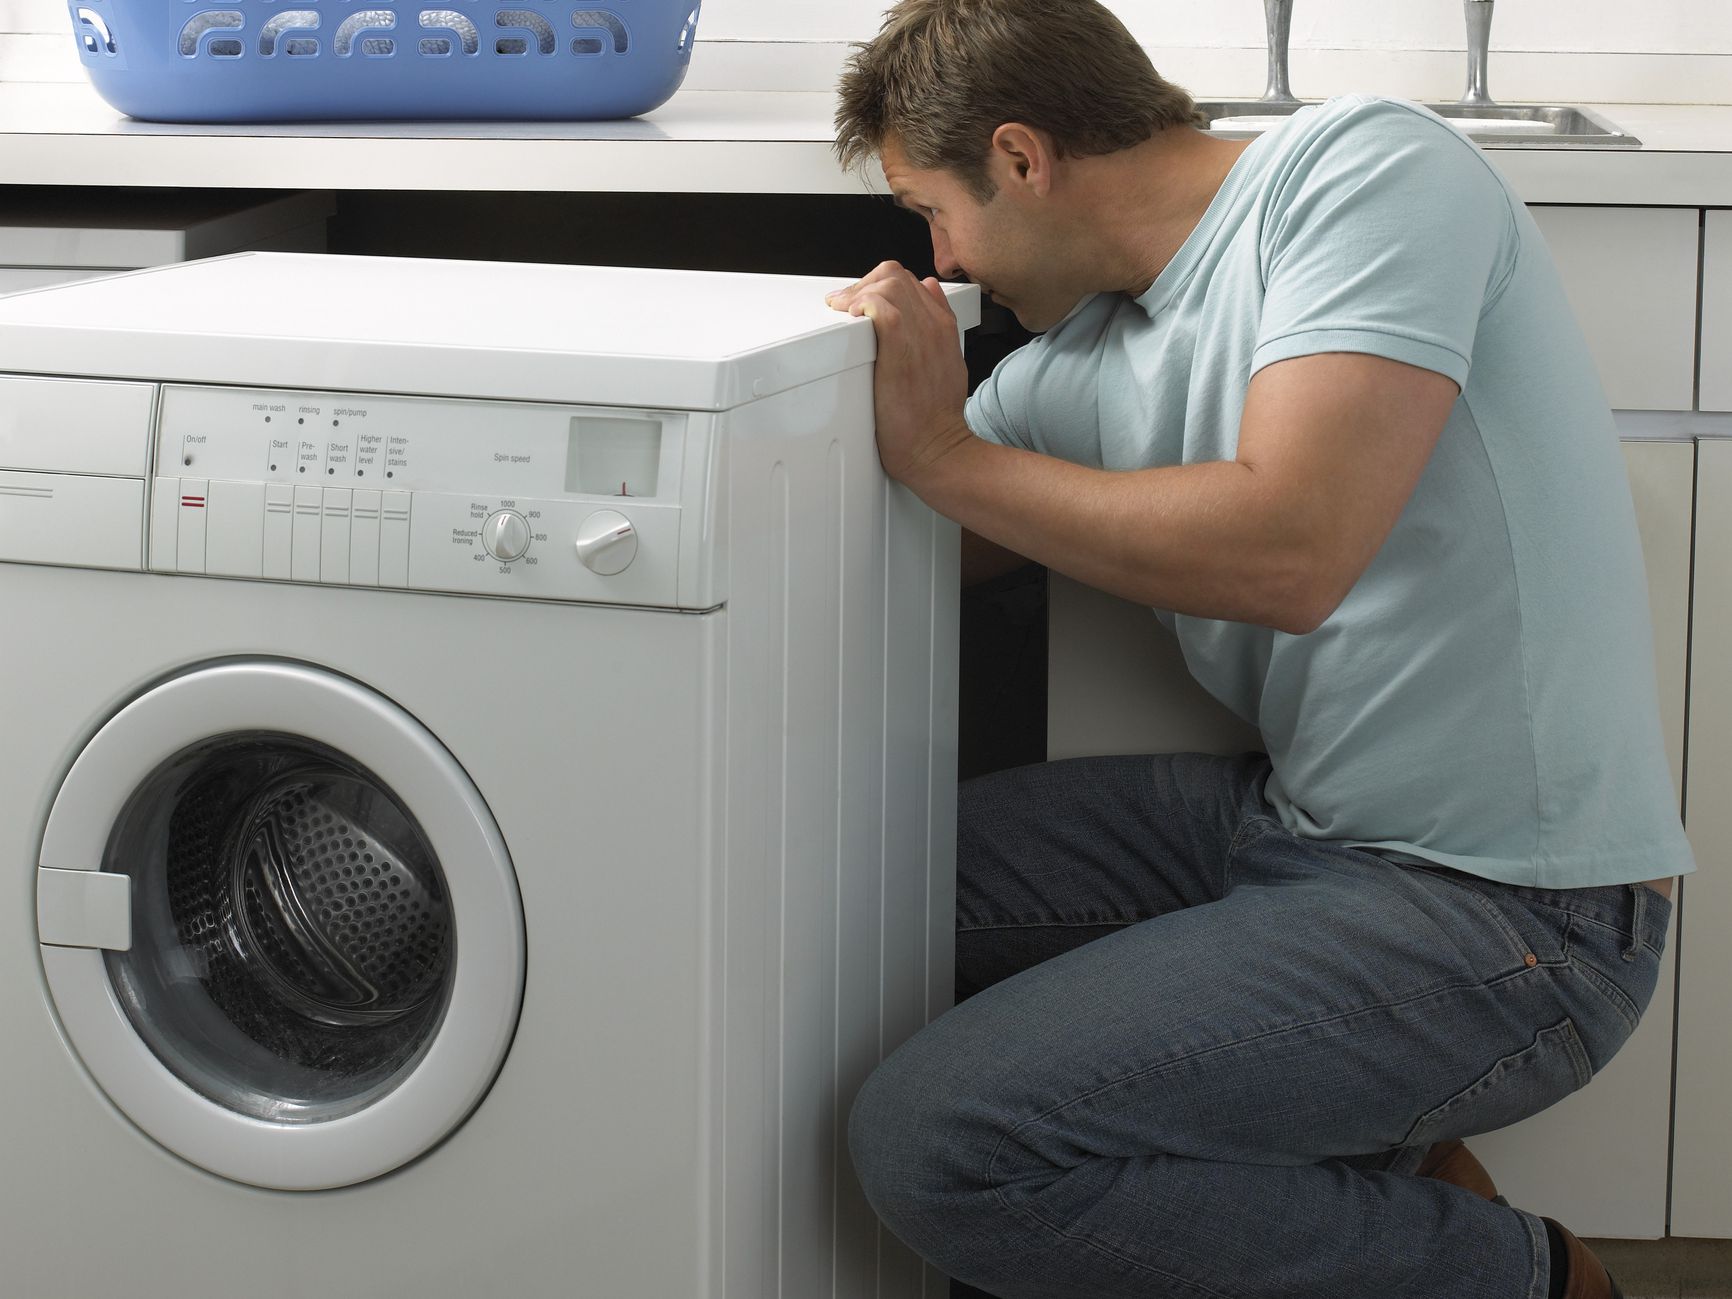  حل مشکل تخلیه نشدن آب ماشین لباسشویی